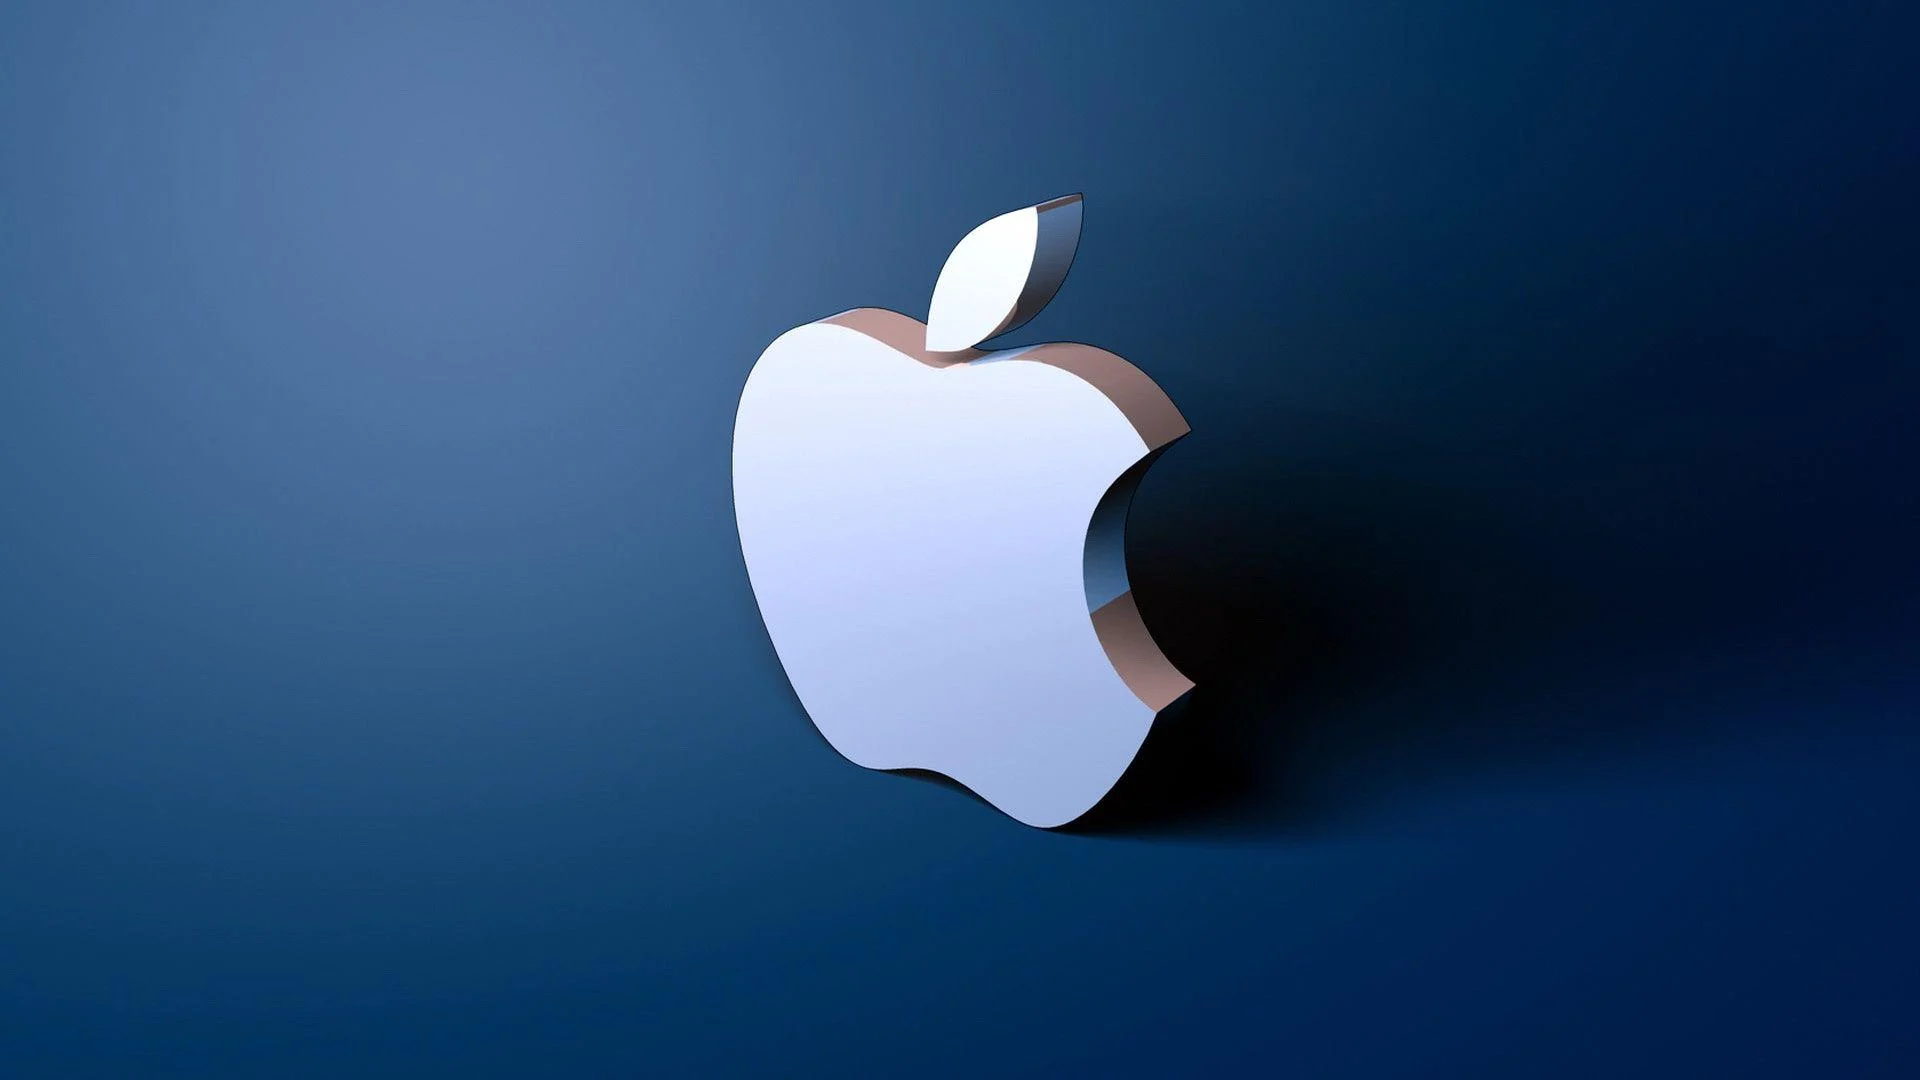 苹果正在将更多注意力转向 6G 技术研发